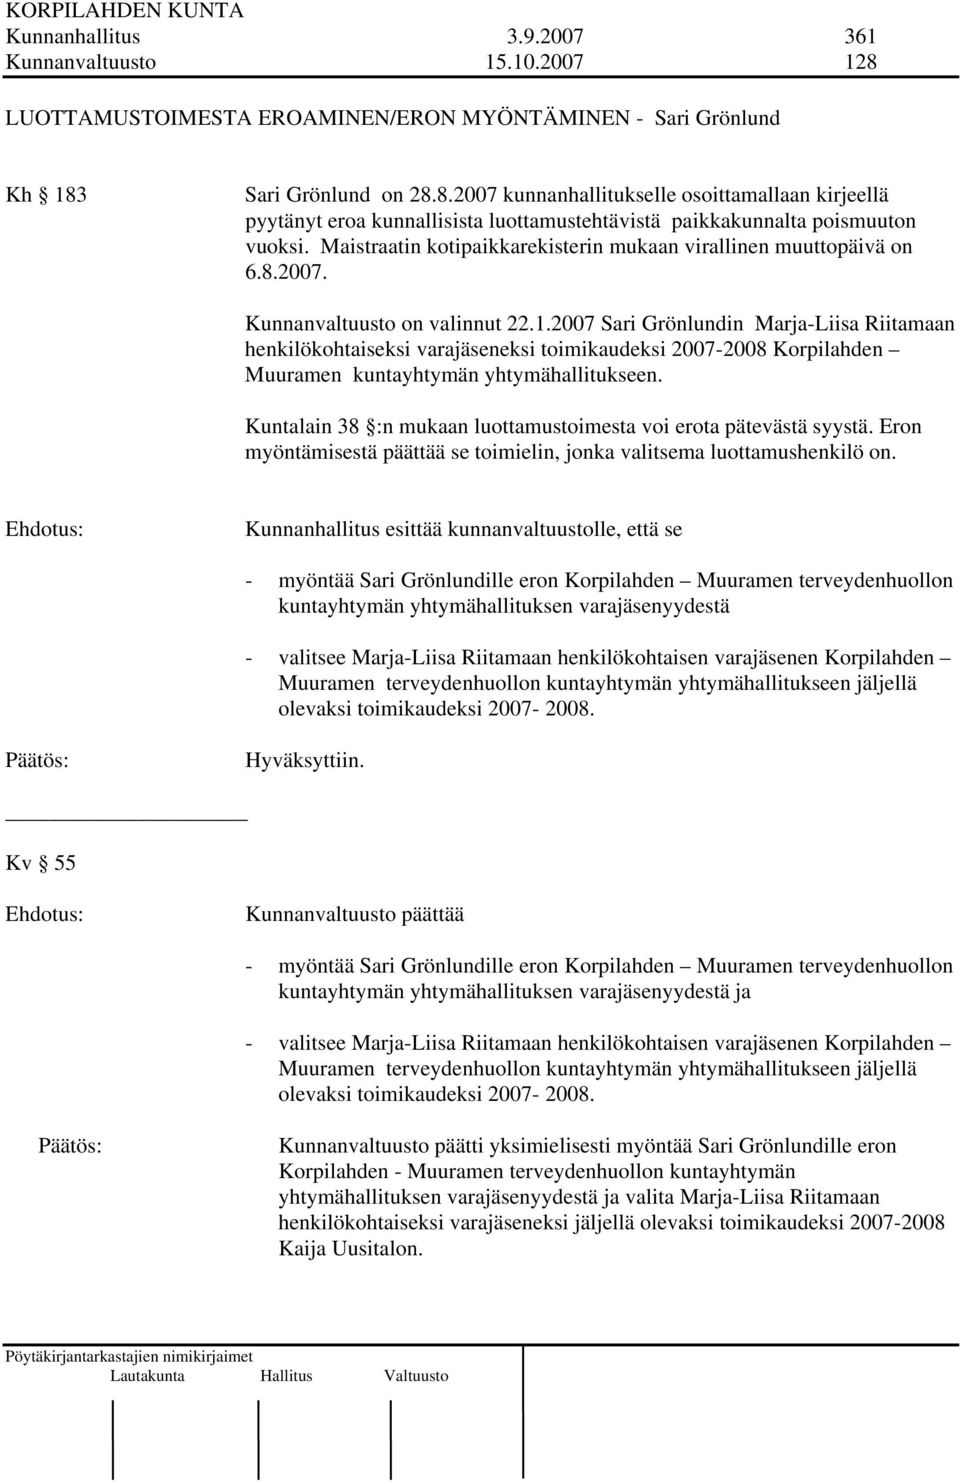 2007 Sari Grönlundin Marja-Liisa Riitamaan henkilökohtaiseksi varajäseneksi toimikaudeksi 2007-2008 Korpilahden Muuramen kuntayhtymän yhtymähallitukseen.